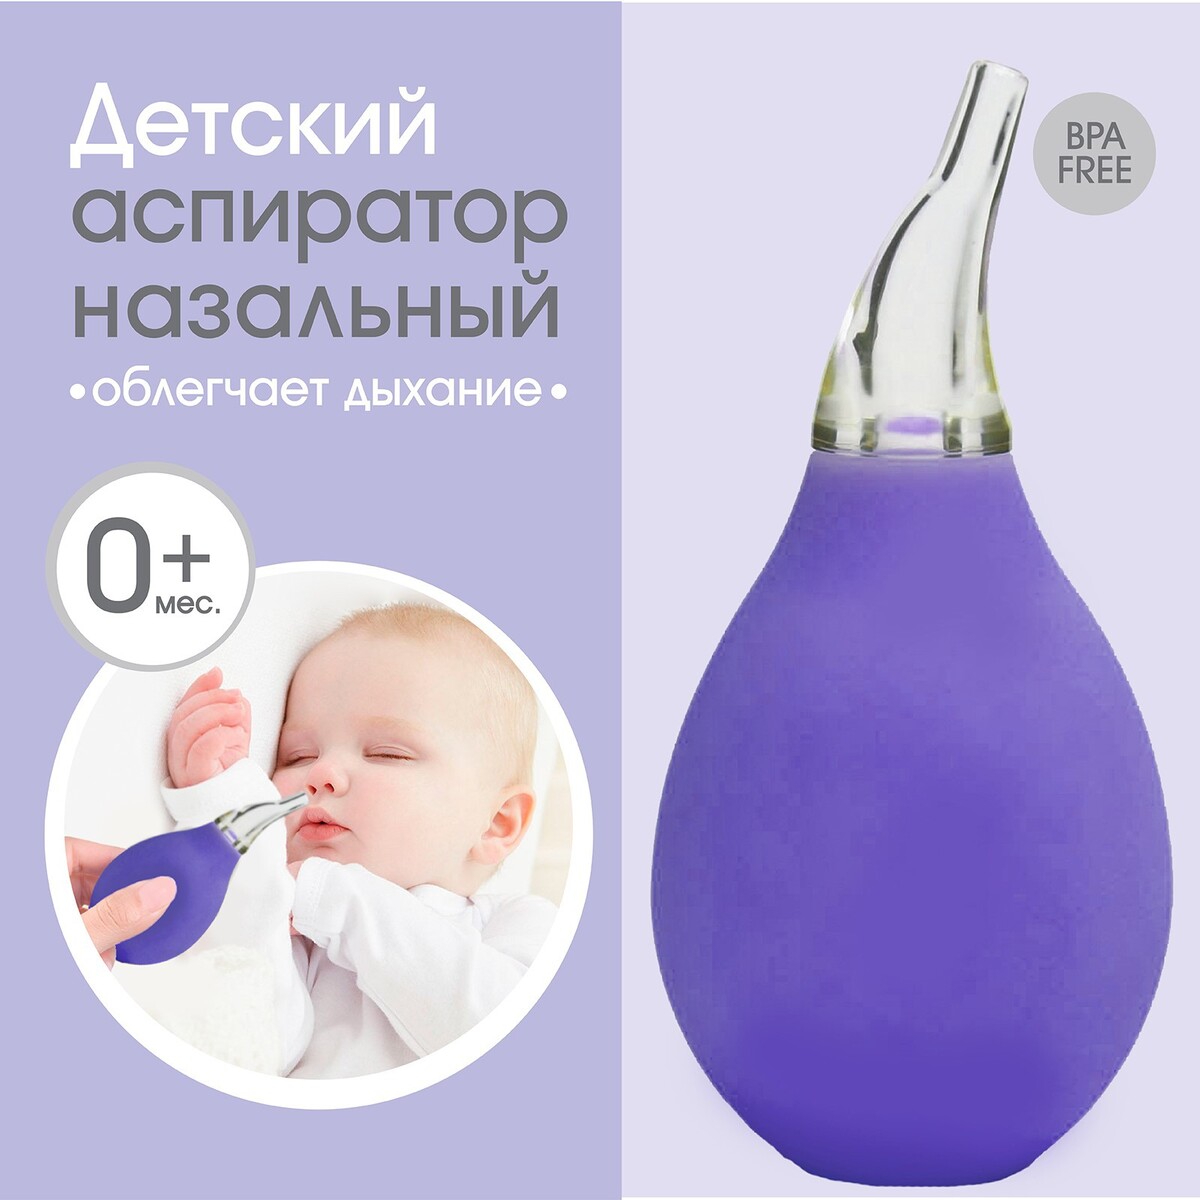 Детский назальный аспиратор, цвет фиолетовый аспиратор b well wc 150 1800